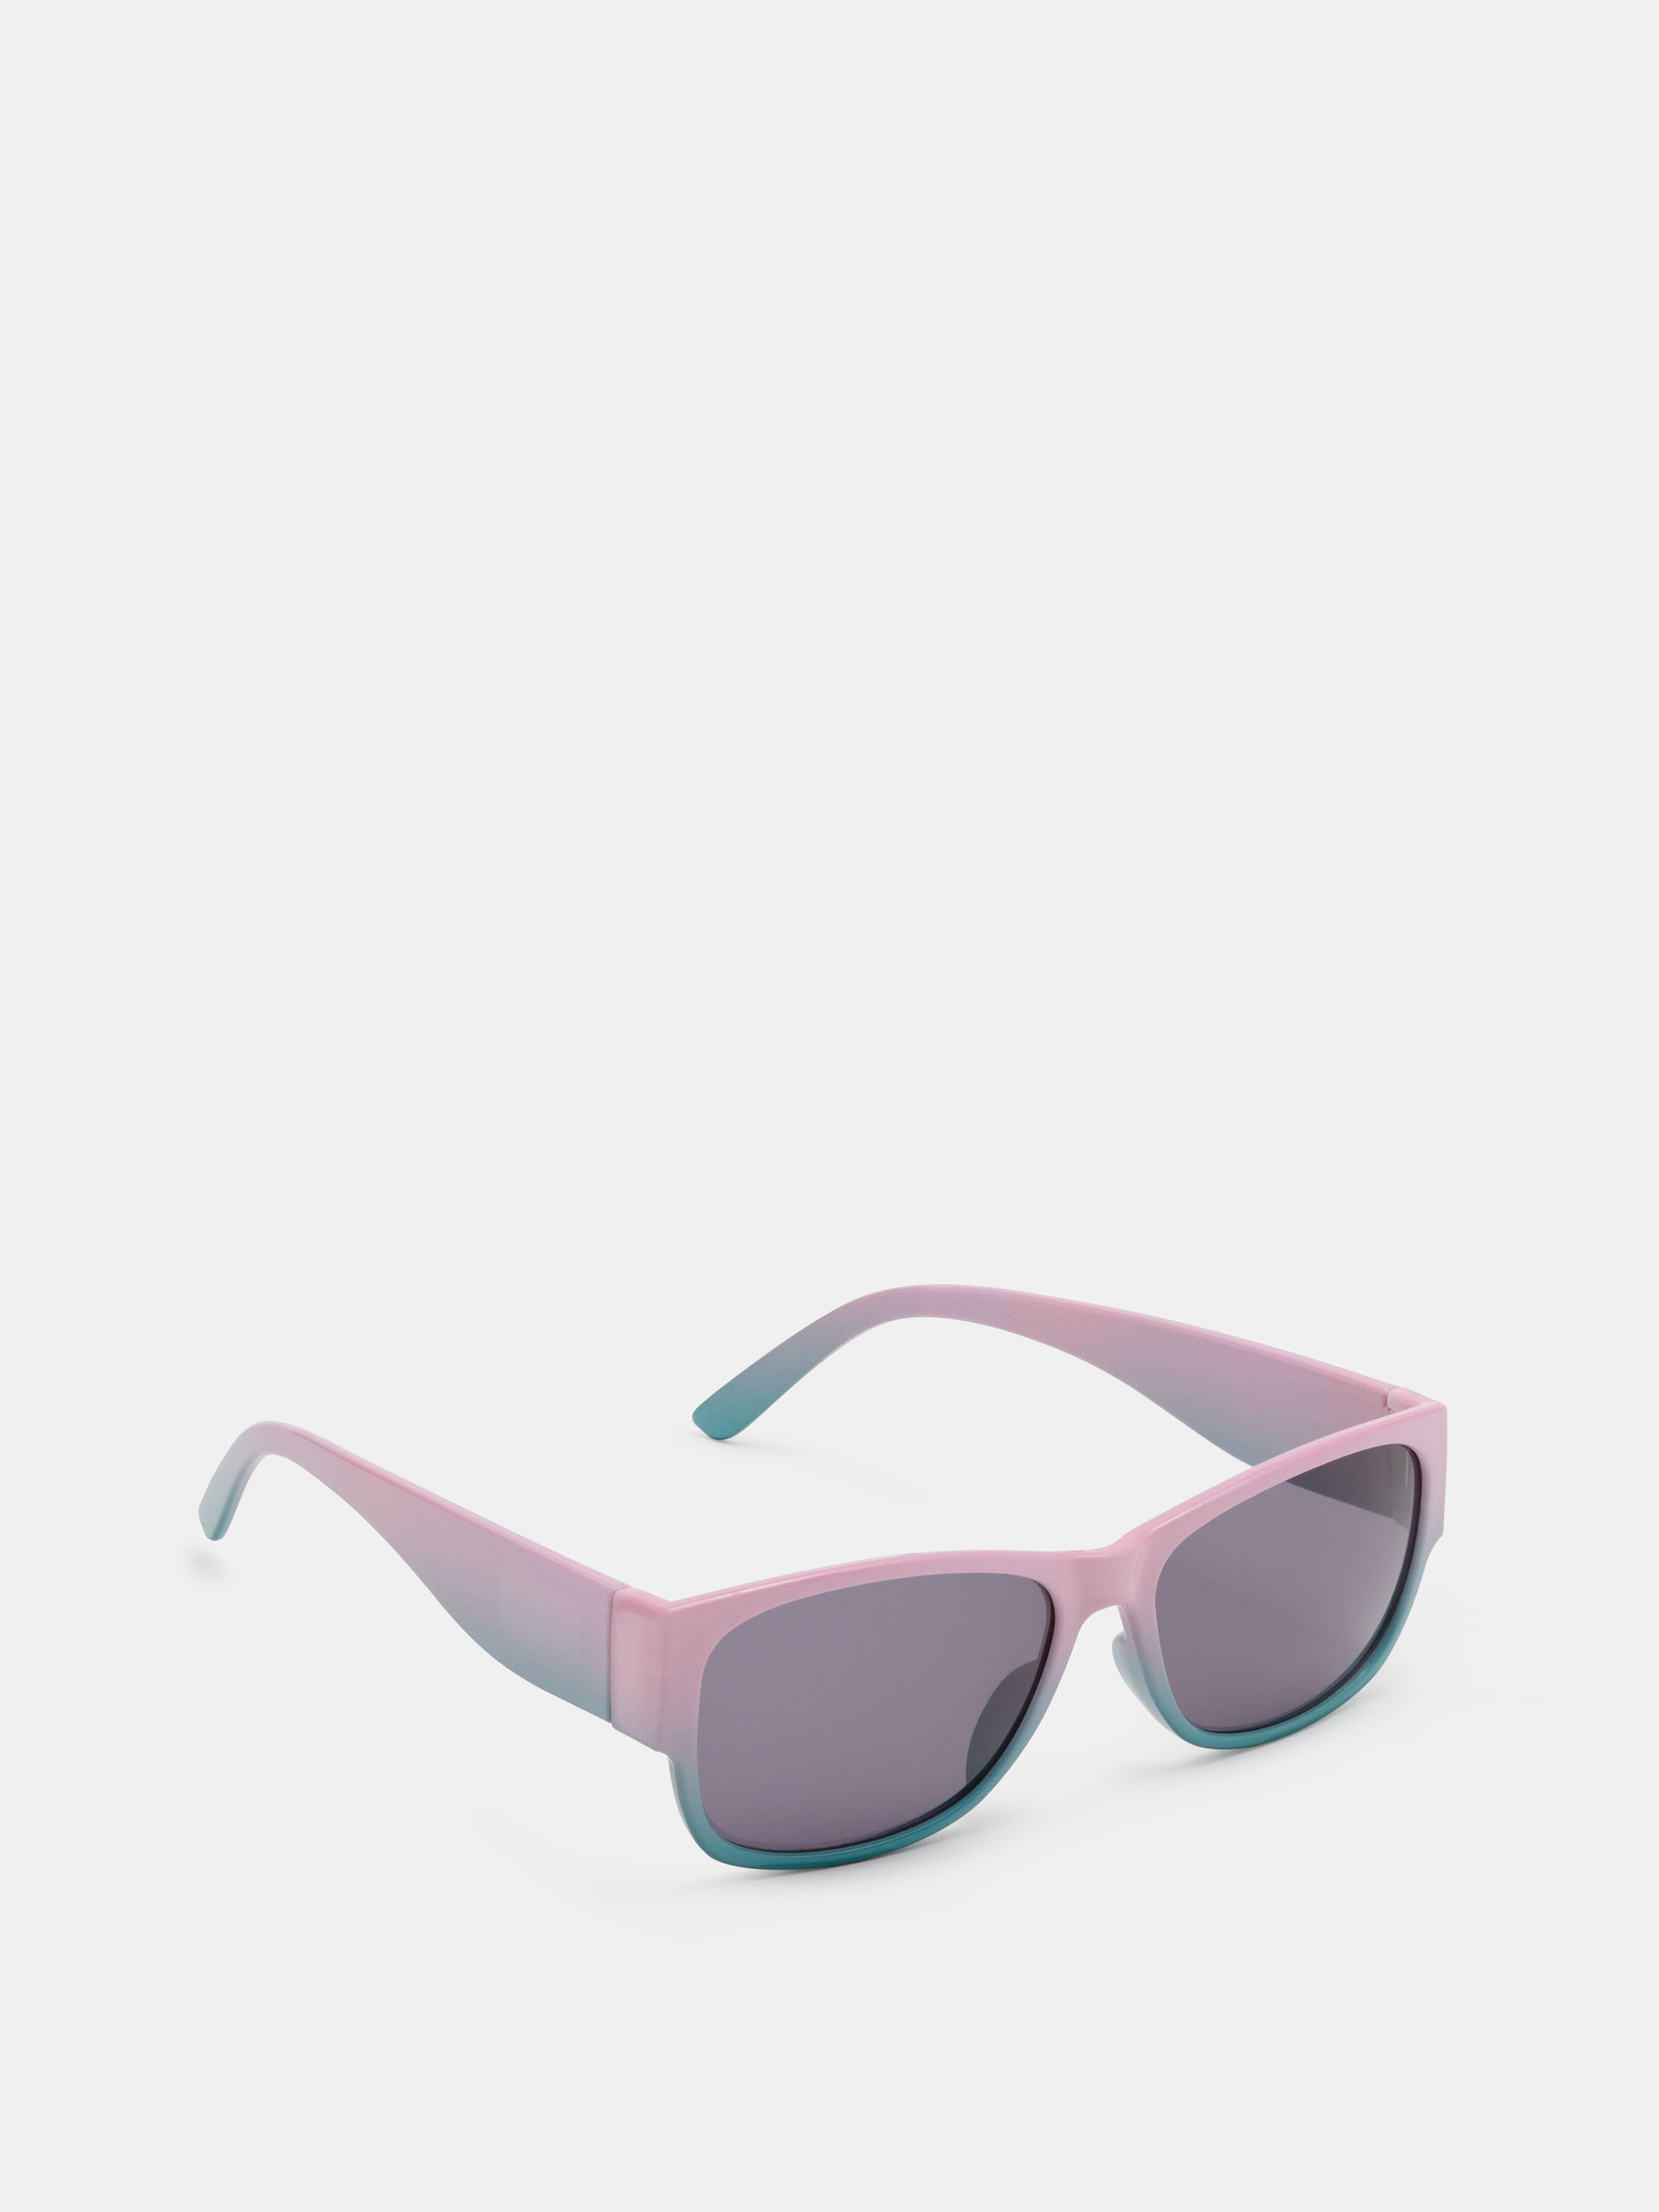 Buy Dora UV Protected Cat Eye Girl's Sunglasses - (8901736172943|39|Black  Color) at Amazon.in